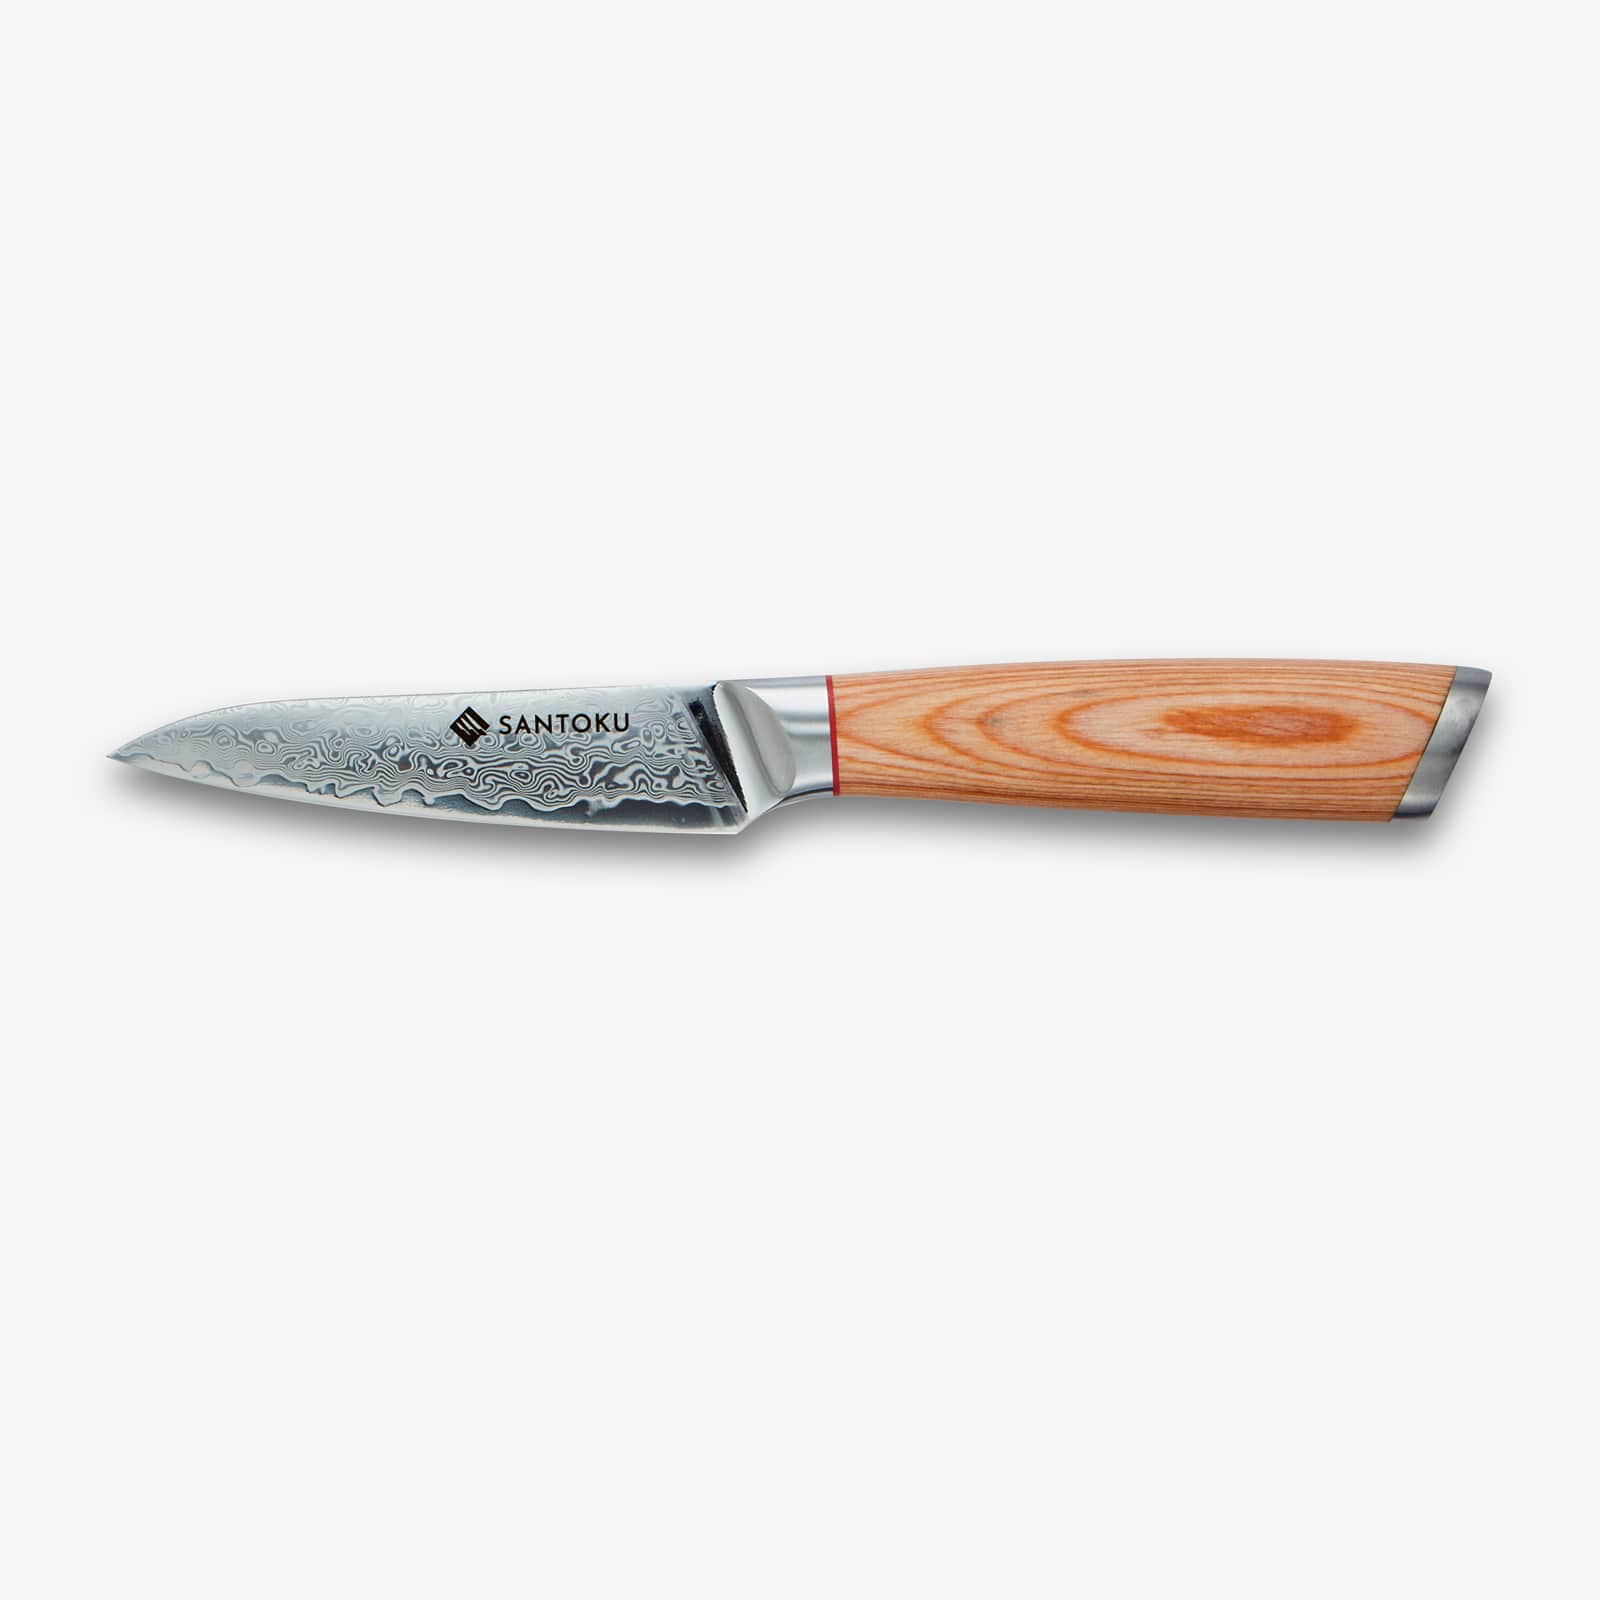 Haruta (はる はる) 67 Layer Aus 10 Damaskus Steel Kitchen Knive